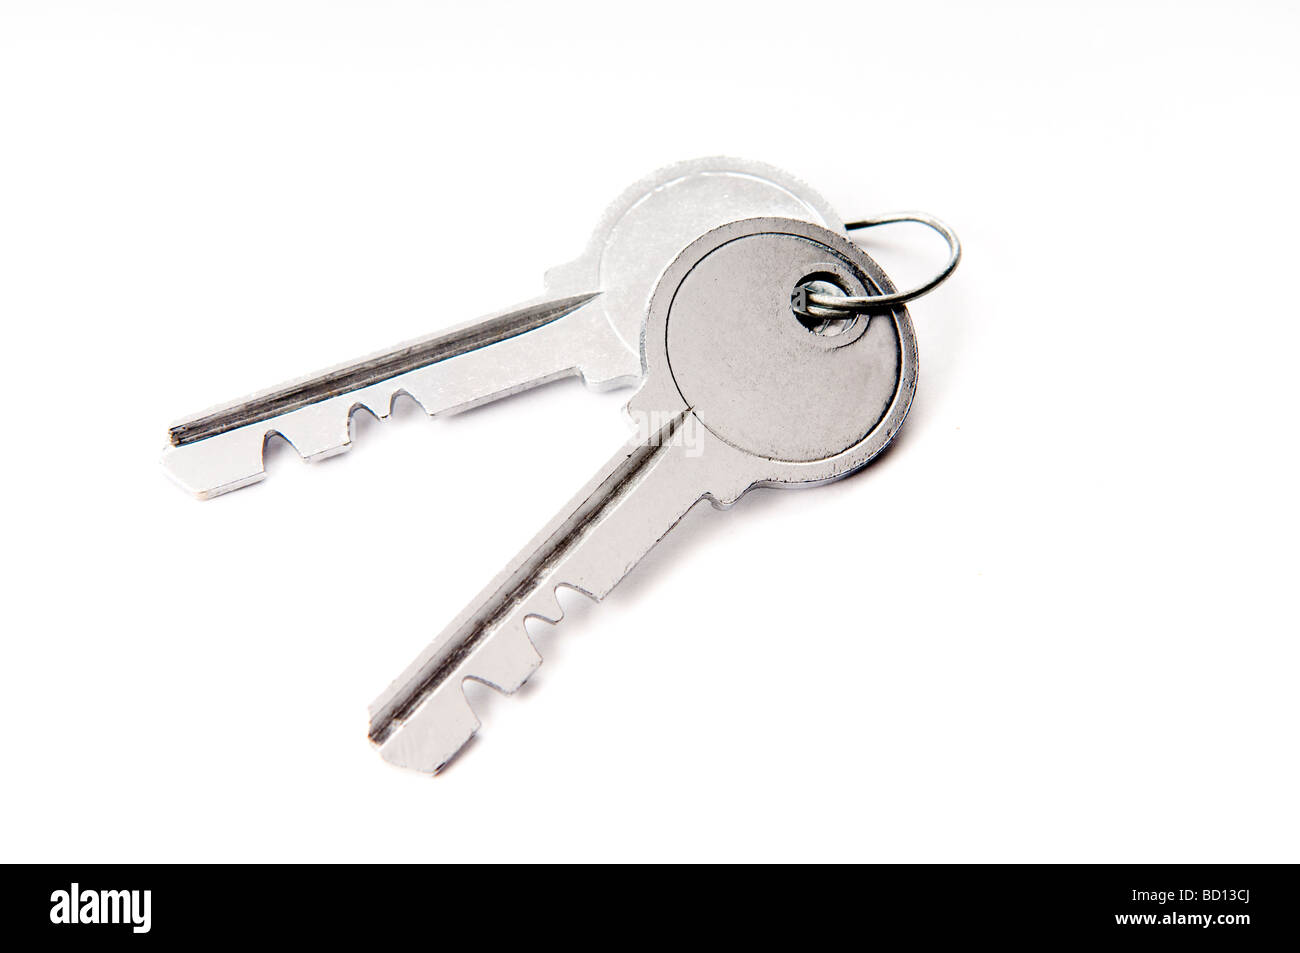 two keys on white Stock Photo